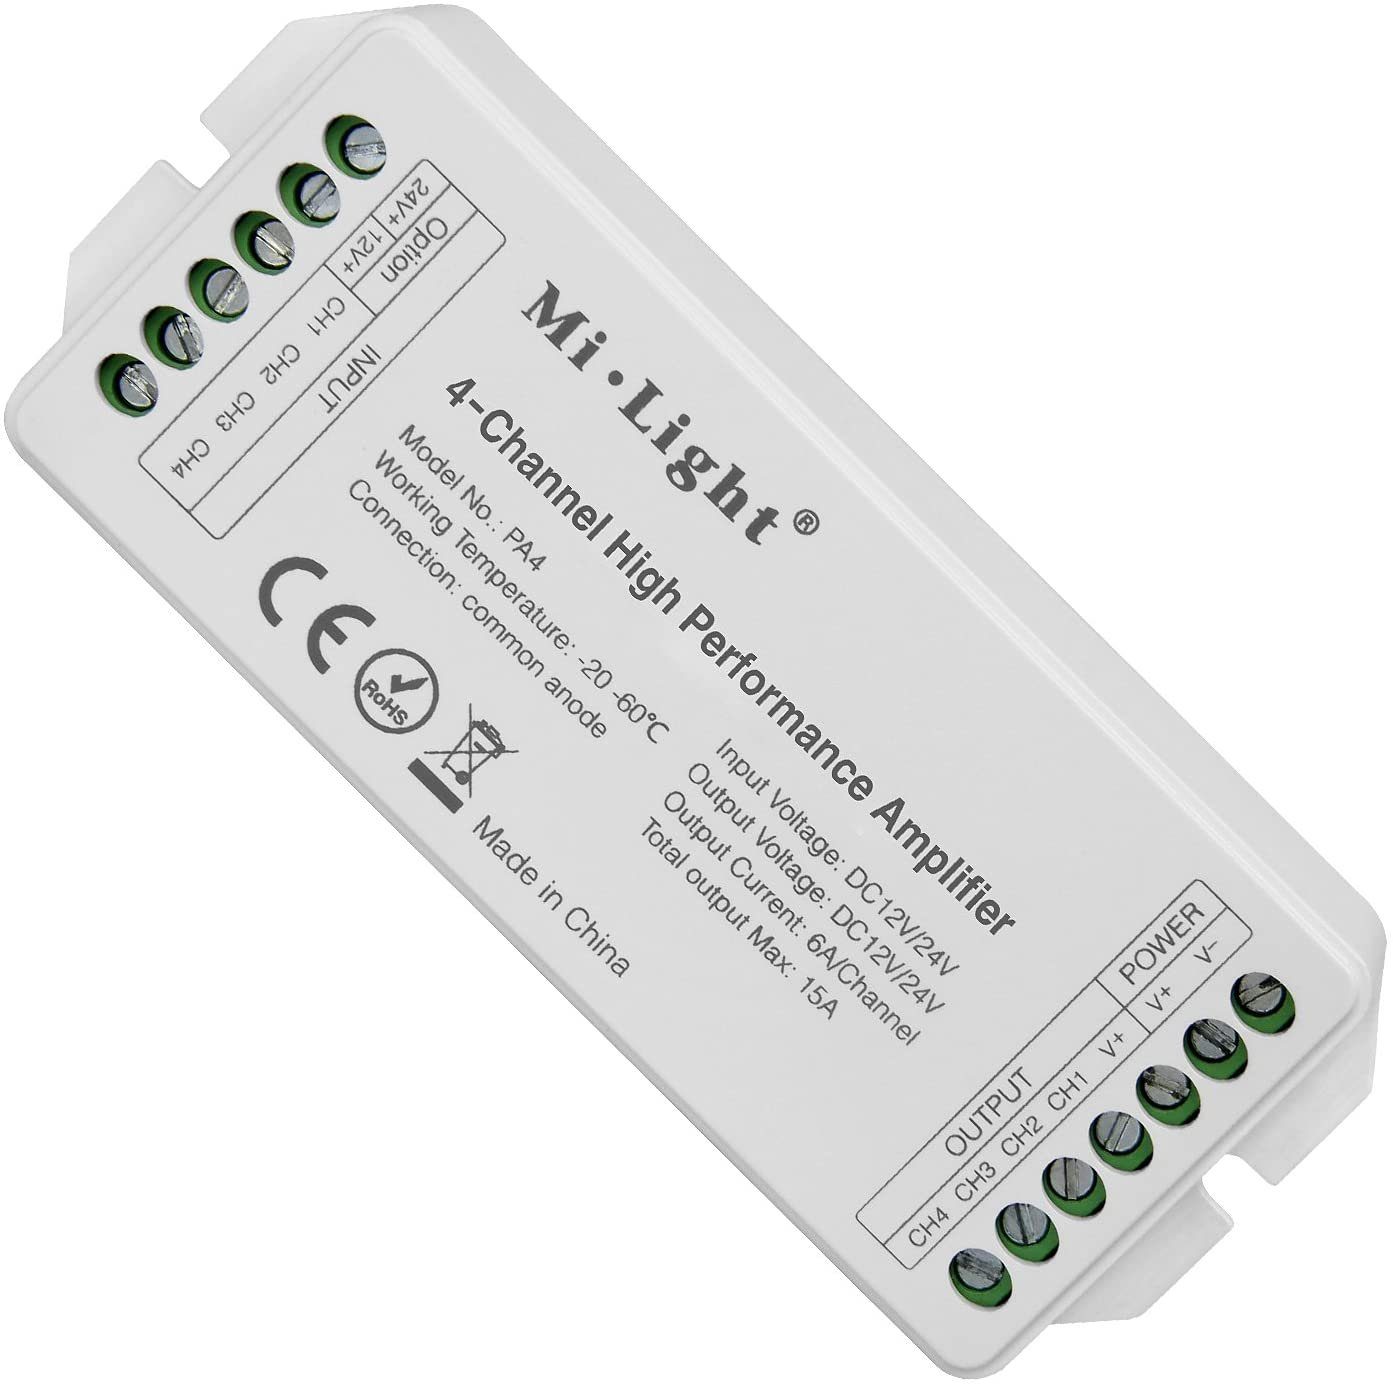 Mi Light LED-Streifen »Mi.Light PA4 4 Kanal Hochleistungsverstärker  DC12V-24V max. 15A RGB RGBW LED Verstärker Controller für RGB RGBW LED Strip«  online kaufen | OTTO